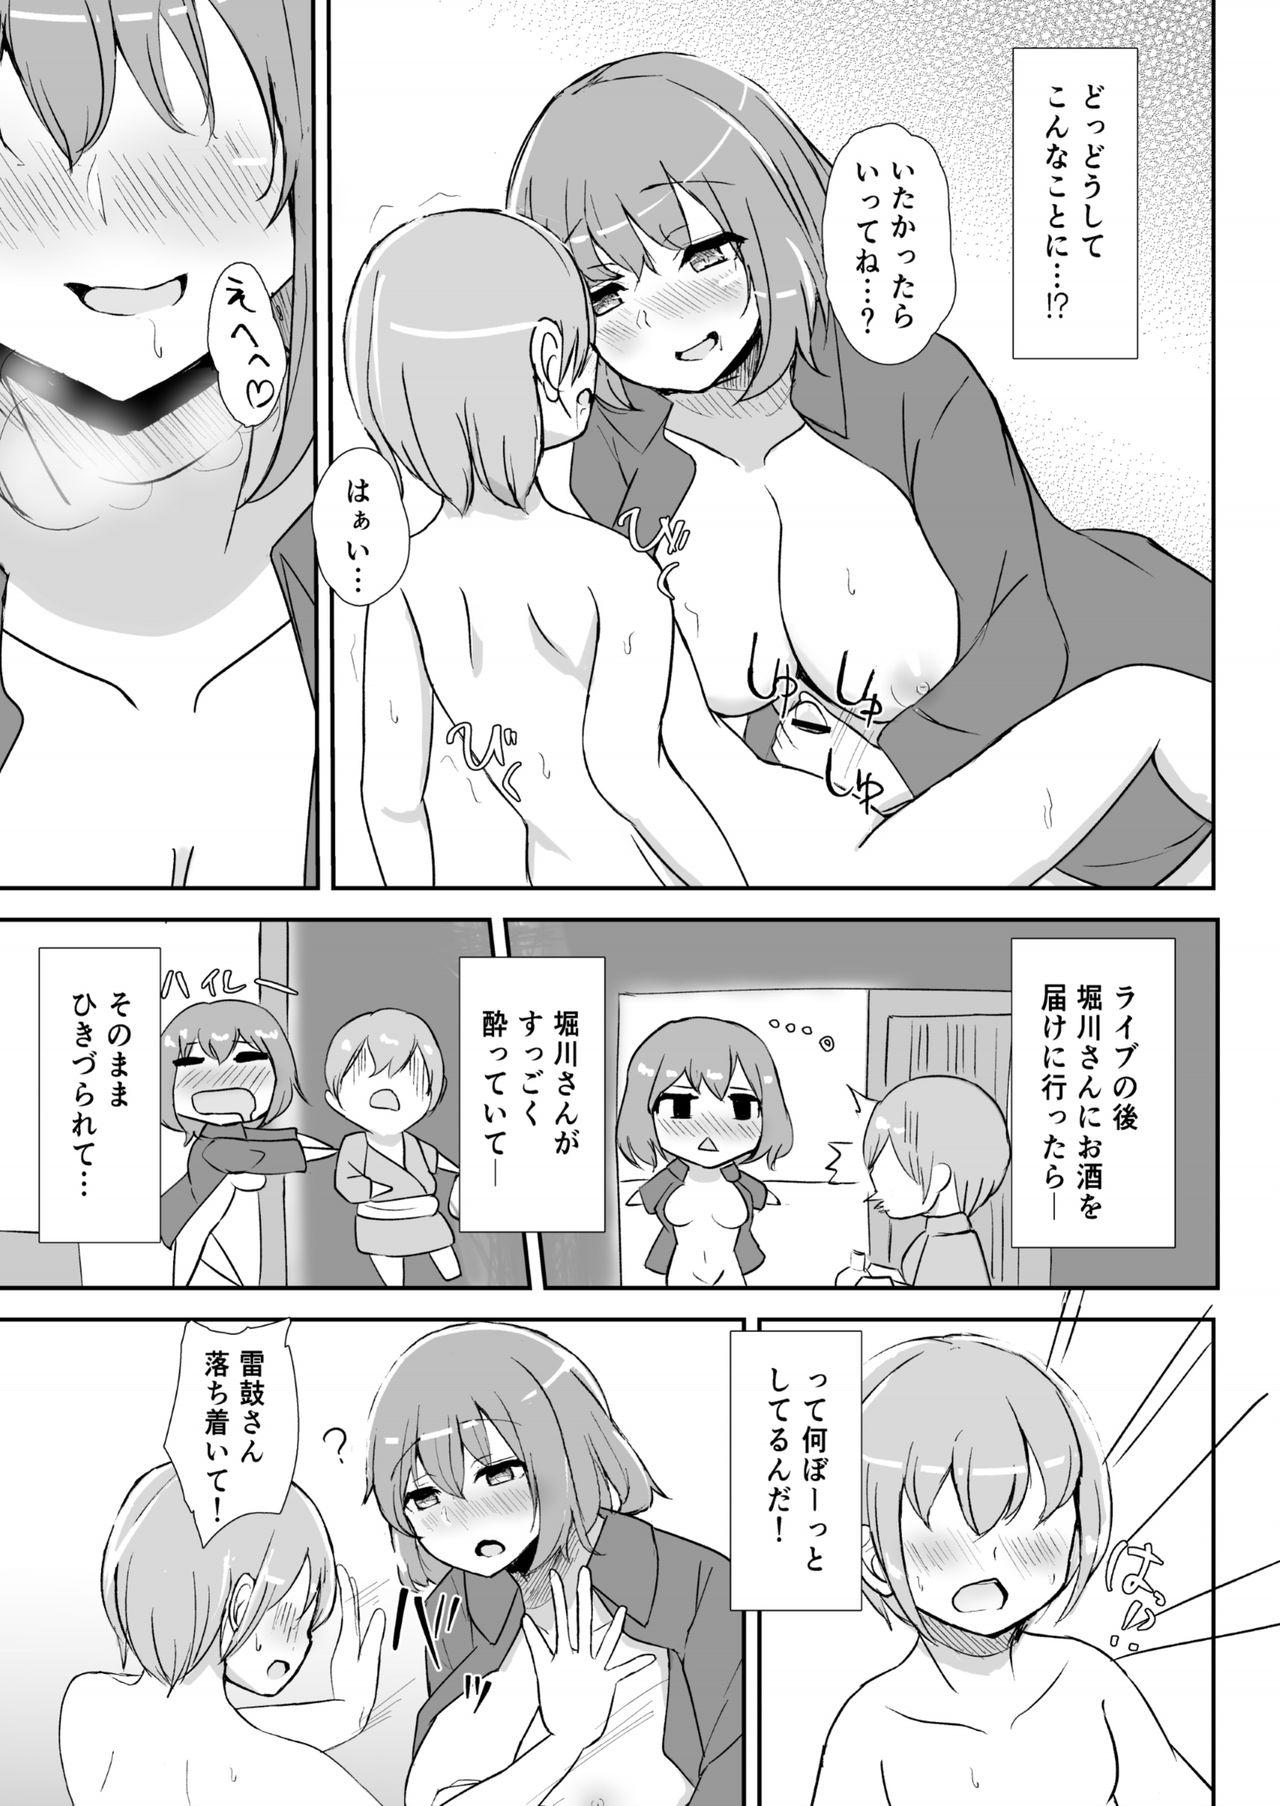 Buttfucking Raiko-san to Deisuix! - Touhou project Shemale Sex - Page 7